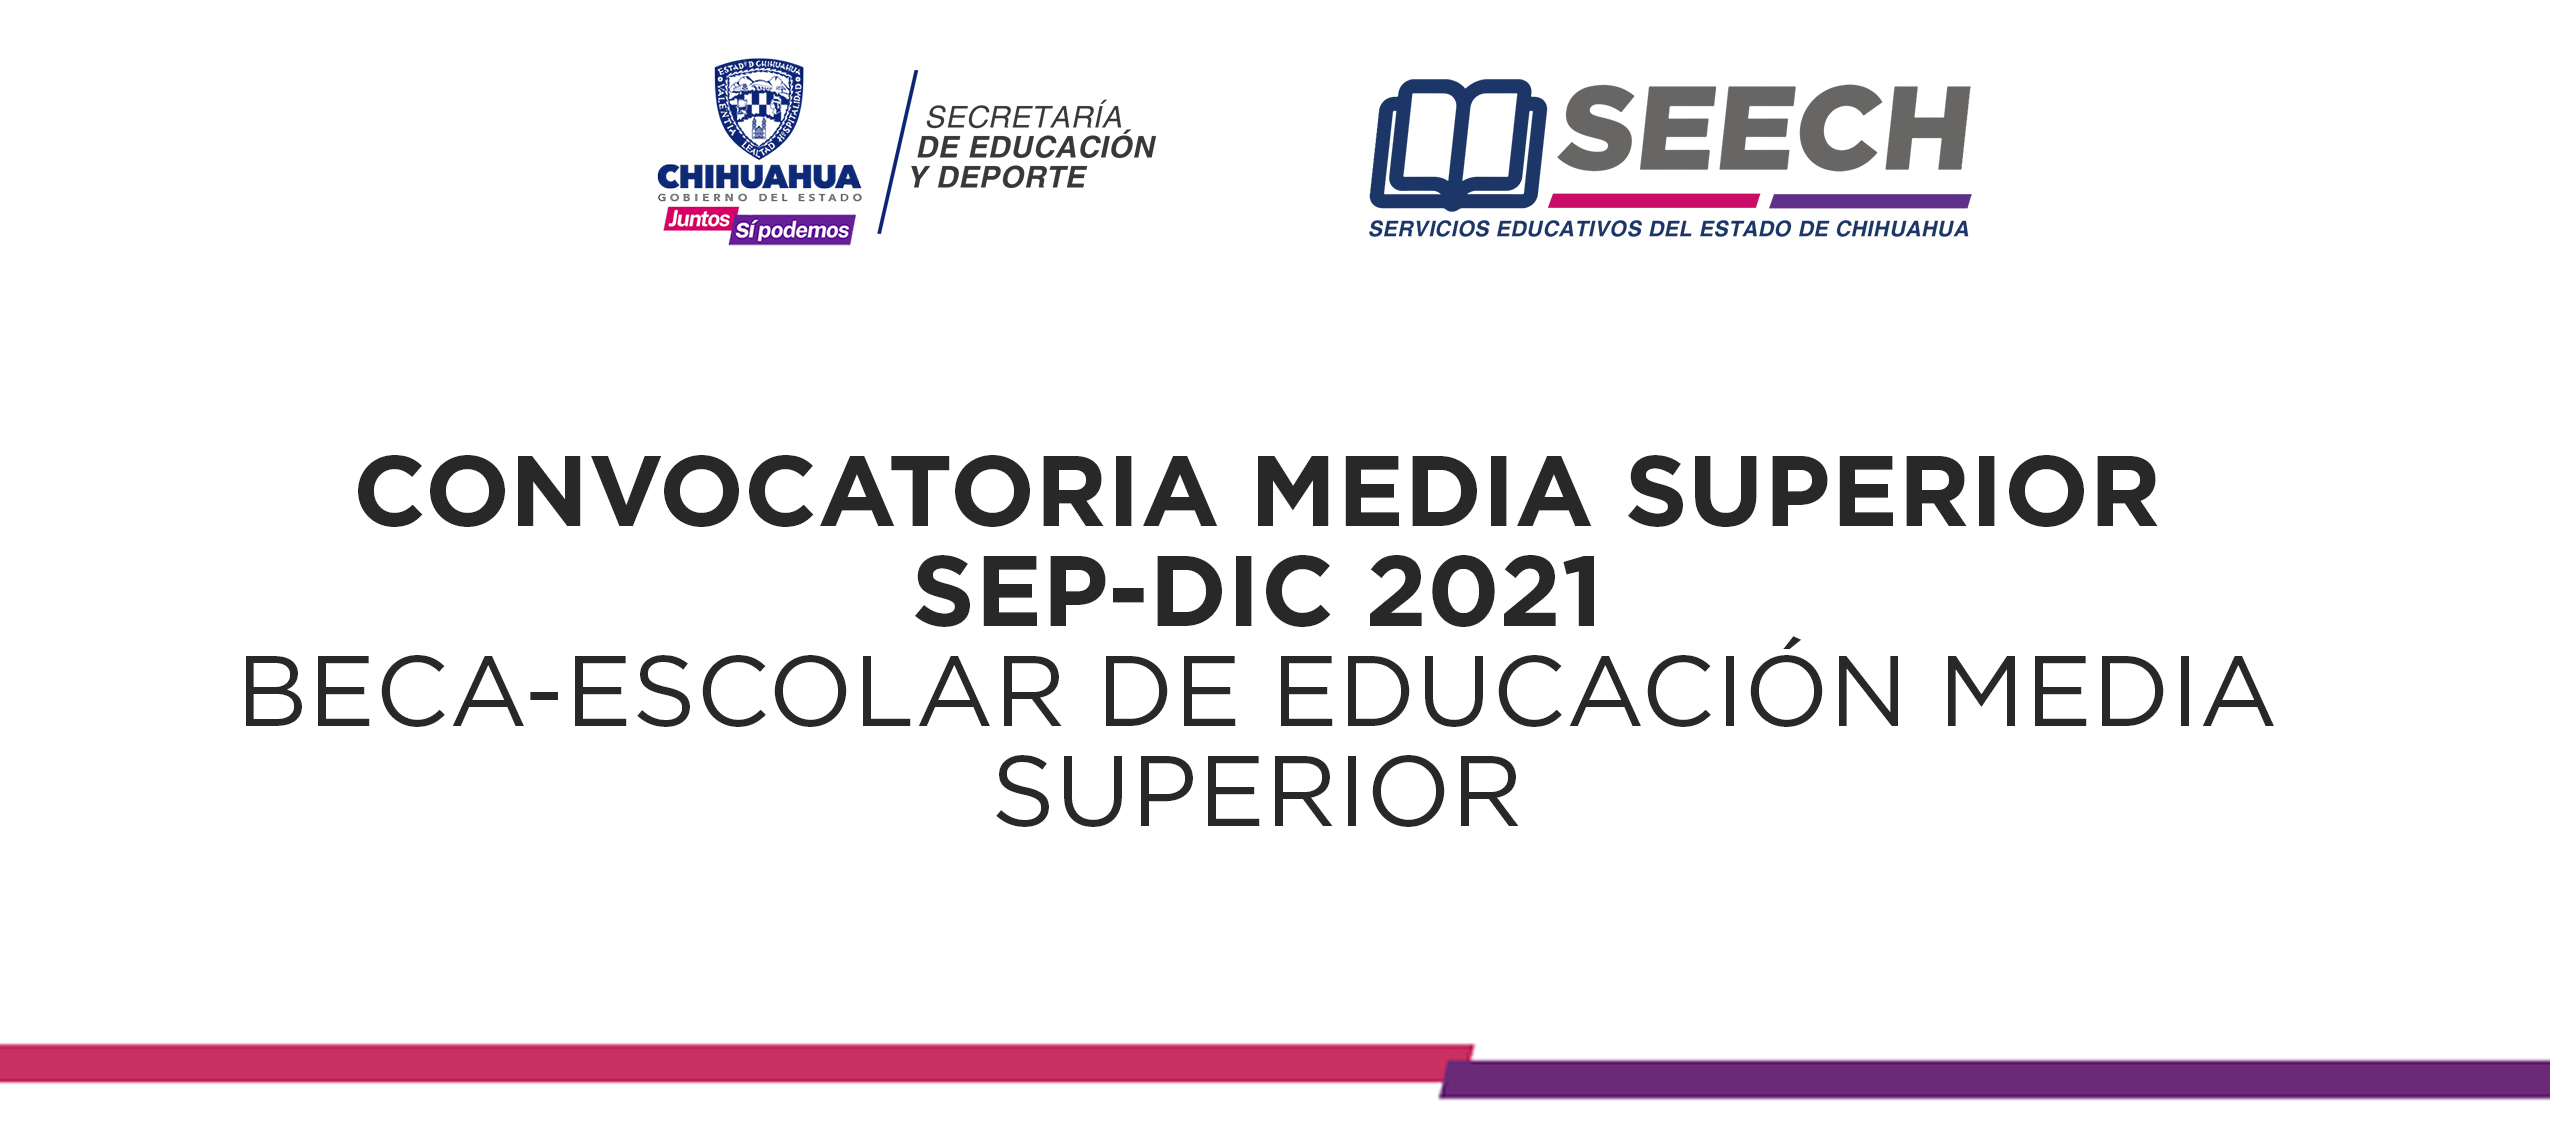 CONVOCATORIA MEDIA SUPERIOR SEP-DIC 2021